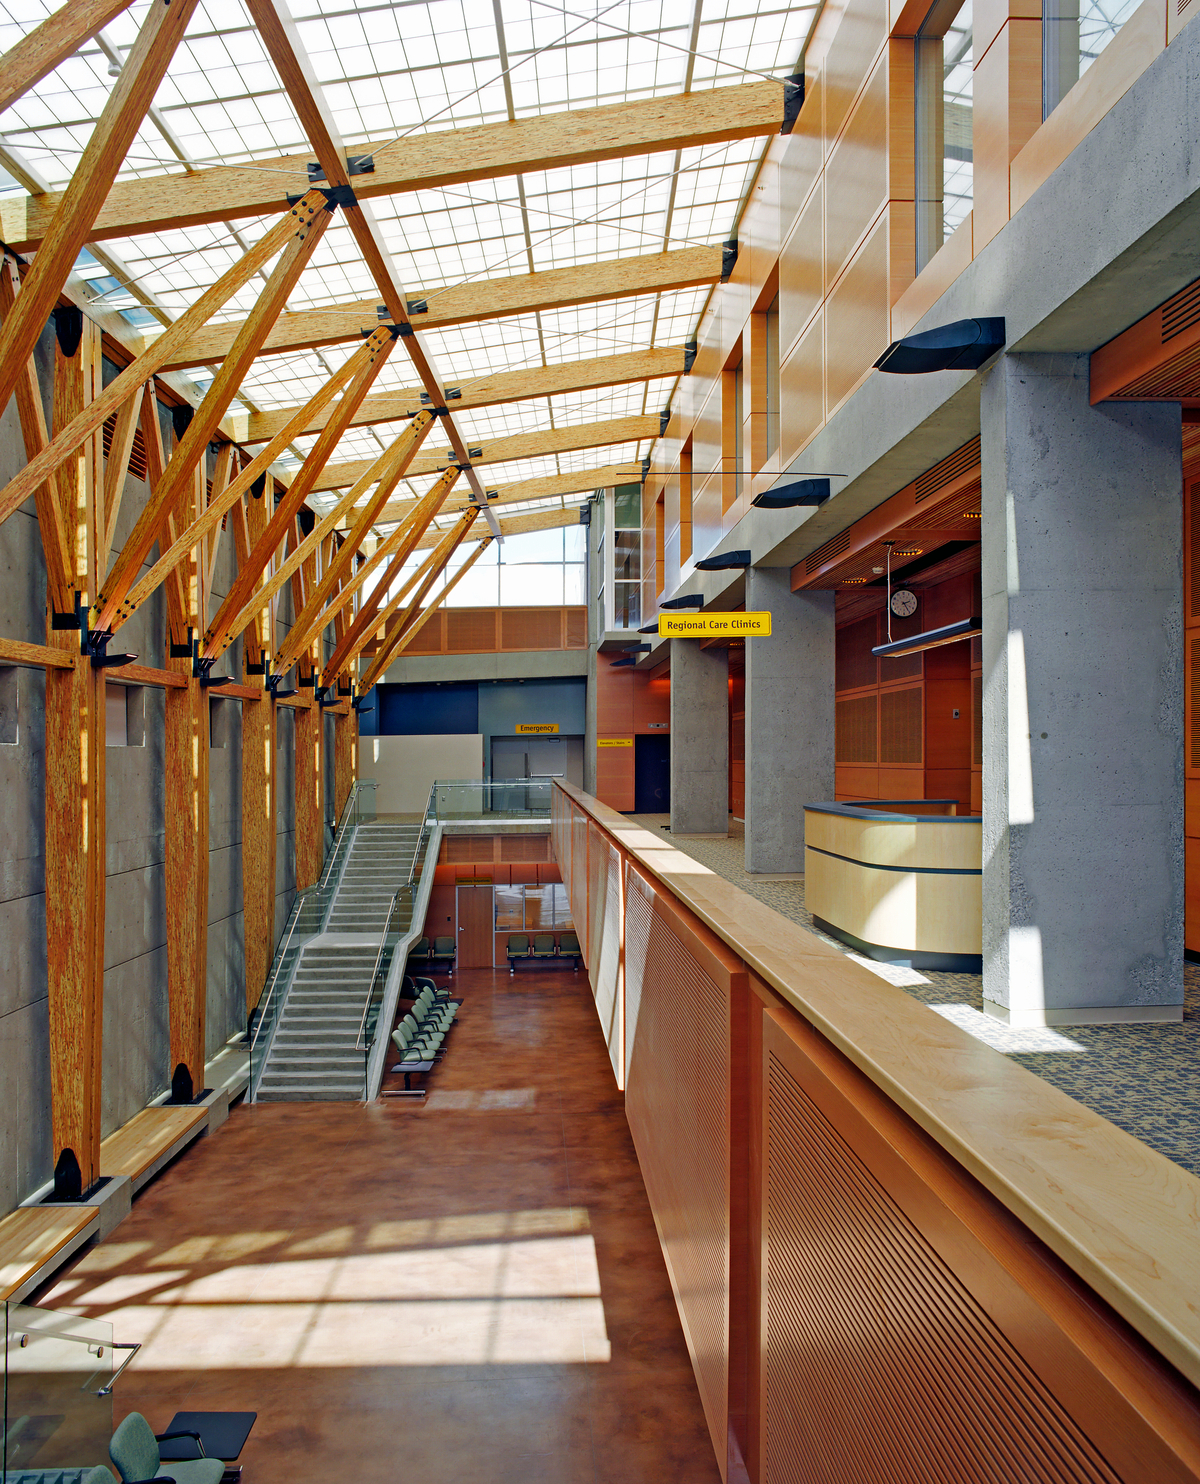 平行绞线木材(PSL)柱和梁在北英属哥伦比亚大学医院的日间室内中庭景观中非常突出